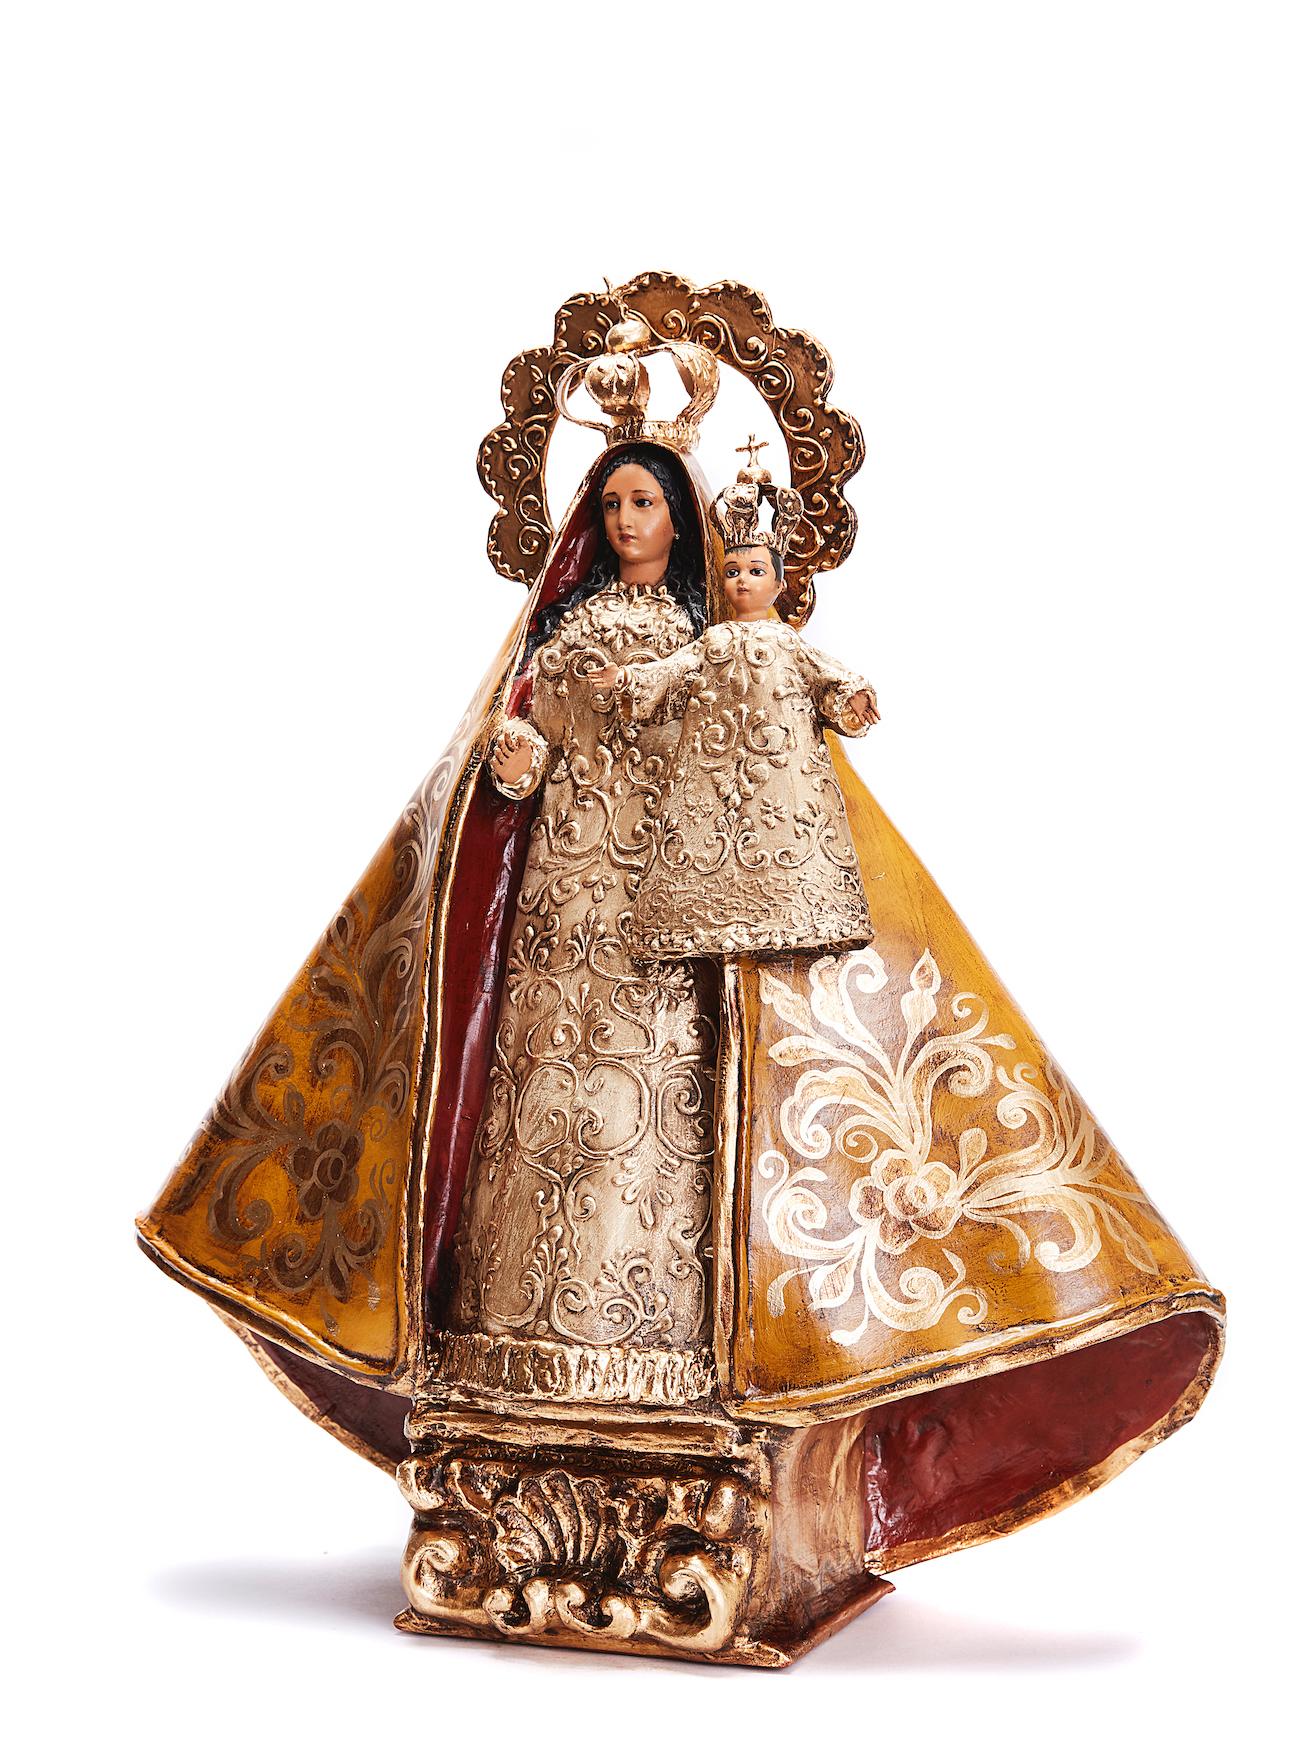 Virgen de la Caridad del Cobre - Crafts - Mexican Folk Art Paper - Sculpture by Danilo Lopez Ochoa